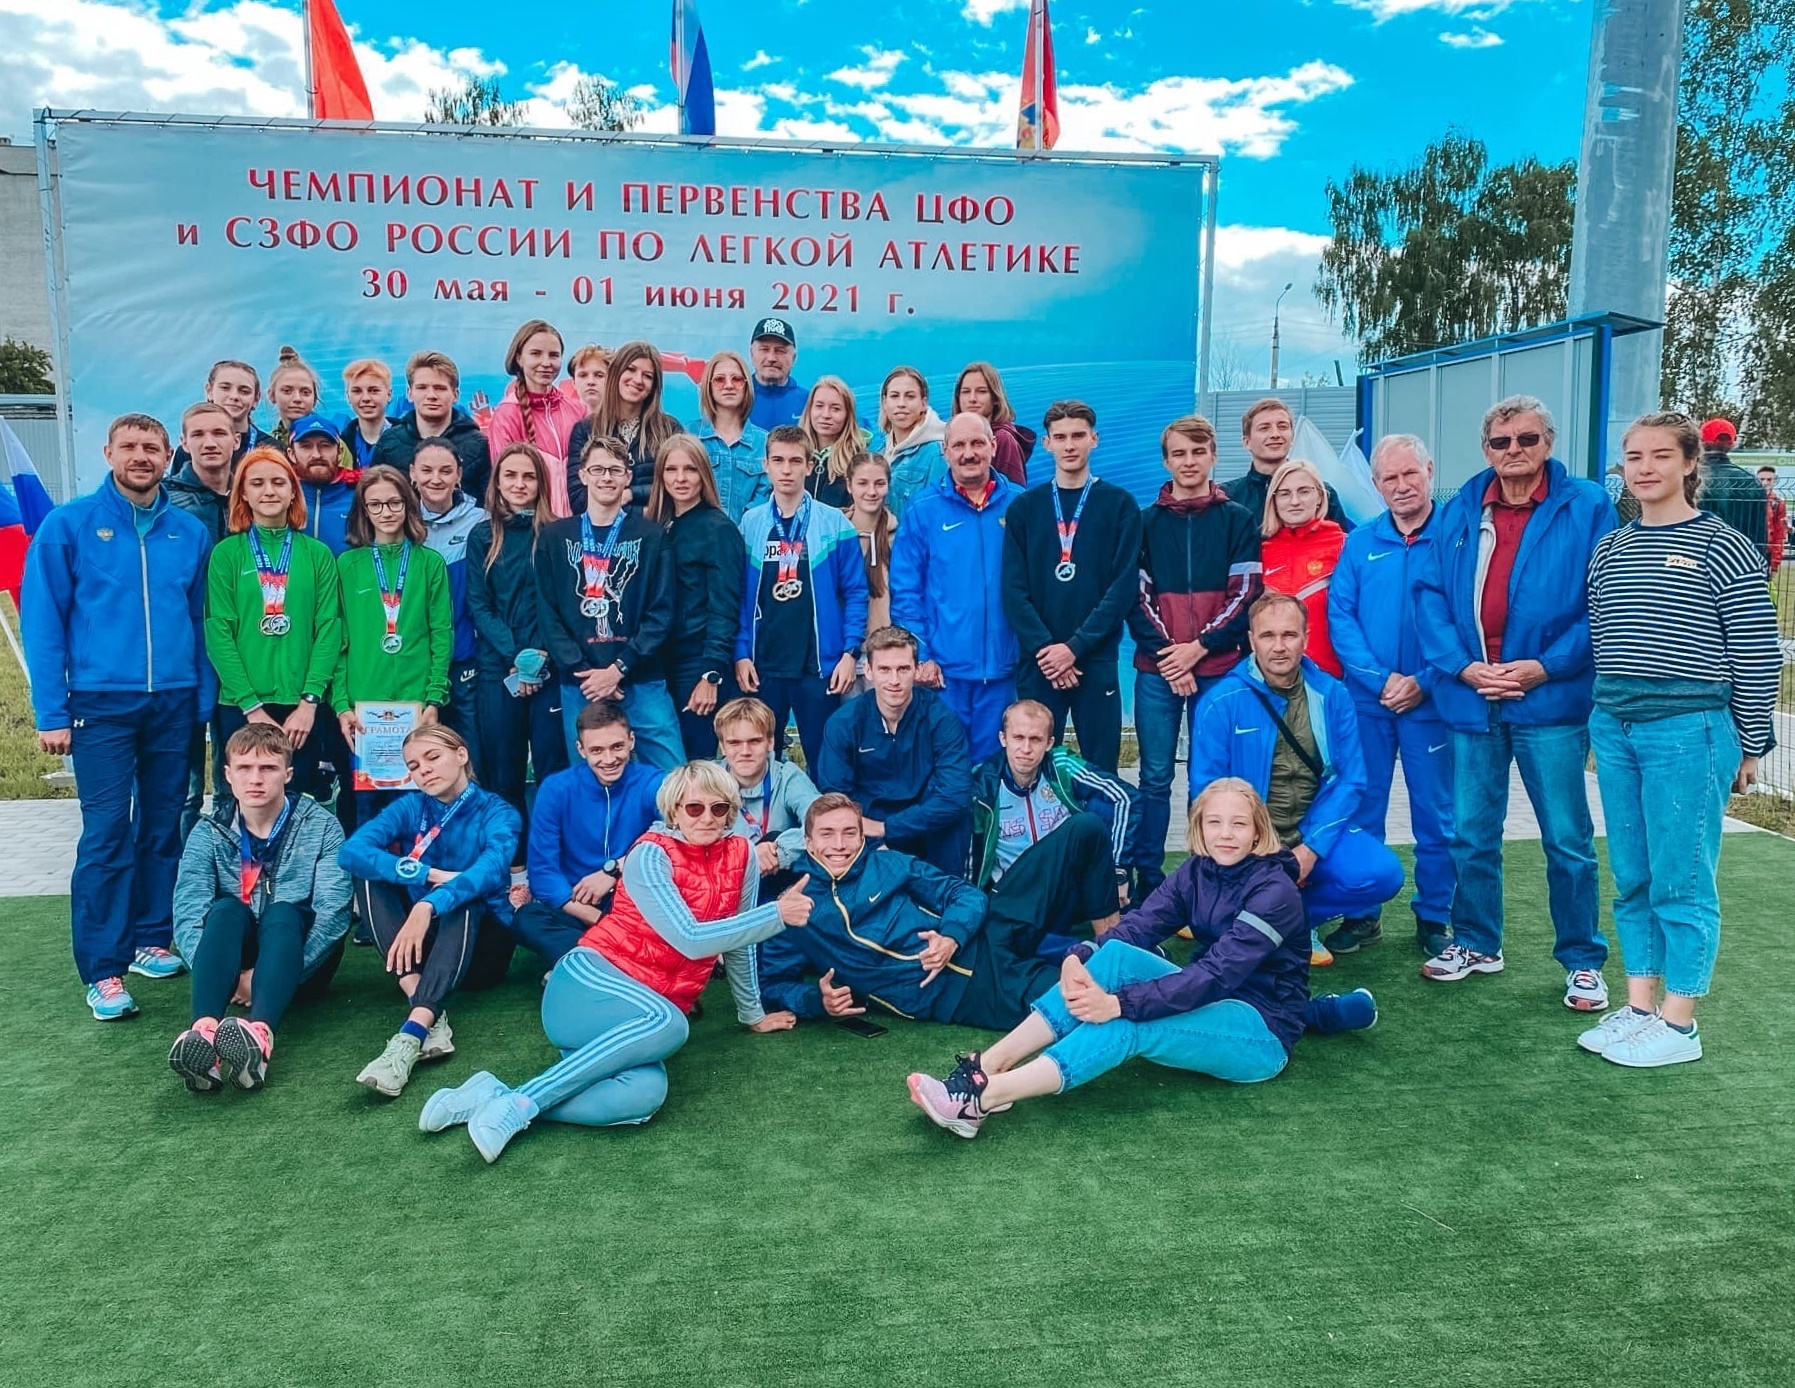 Железногорские легкоатлеты вернулись с медалями из Брянска